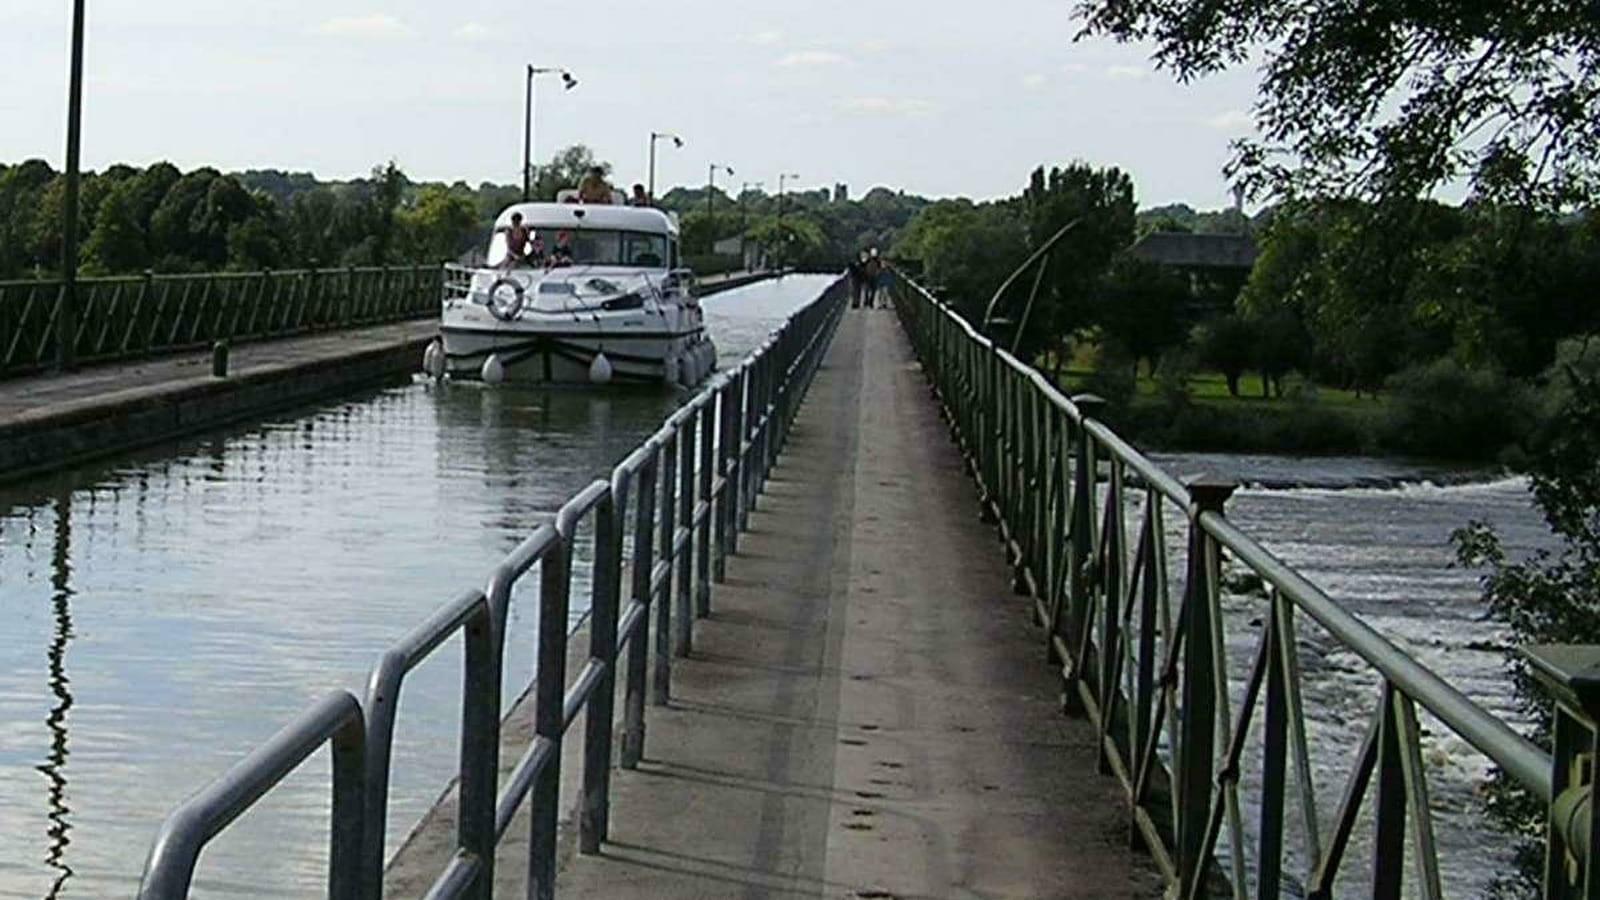 Location de bateaux : Tourisme fluvial du Centre